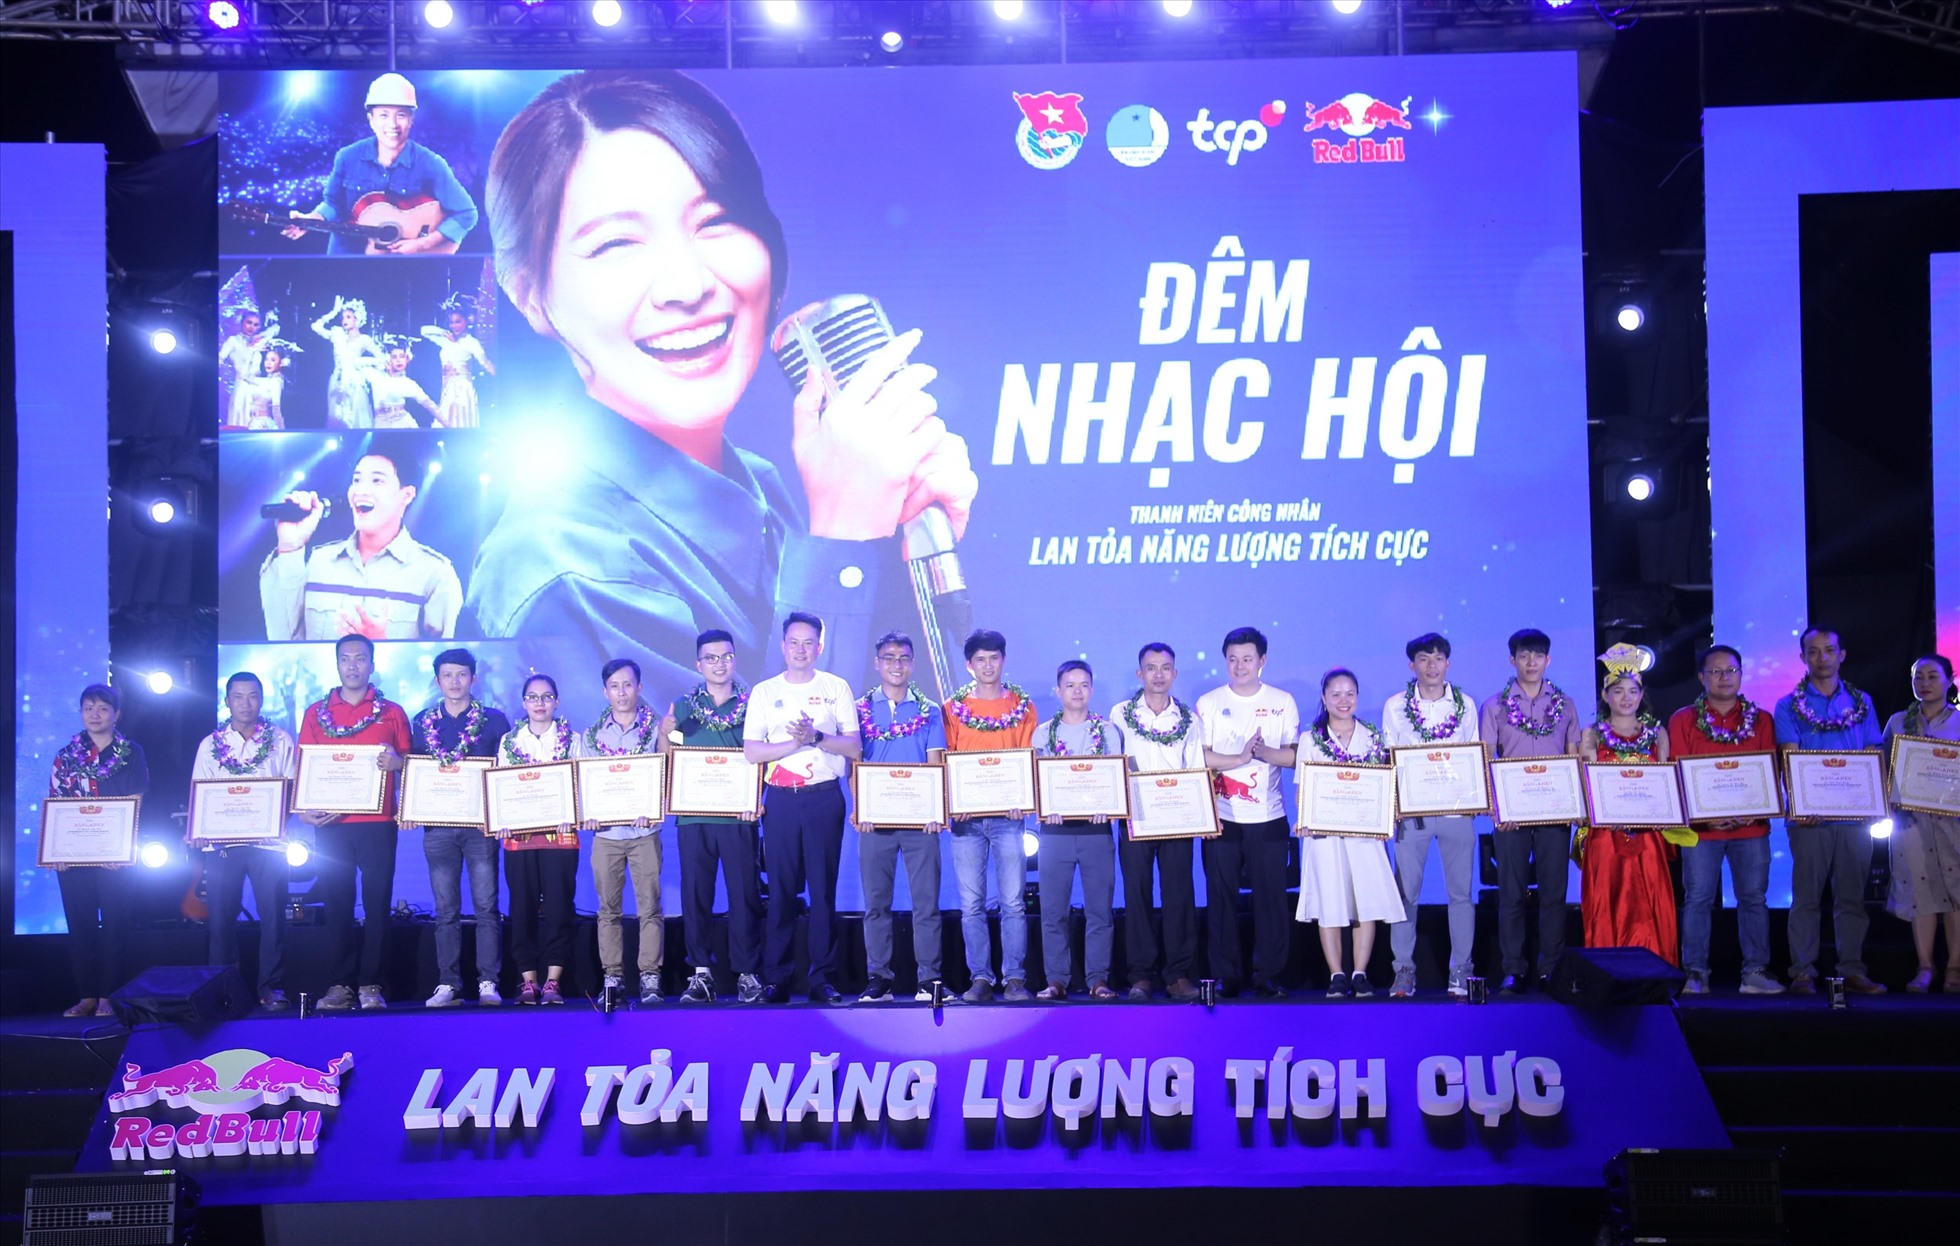 Bên cạnh đó, Tỉnh Đoàn – Hội LHTN Việt Nam tỉnh Quảng Nam đã tuyên dương 20 thanh niên công nhân tiêu biểu có thành tích xuất sắc trong lao động, sản xuất và tích cực trong các hoạt động của Đoàn, Hội. Ảnh: Ái Vân